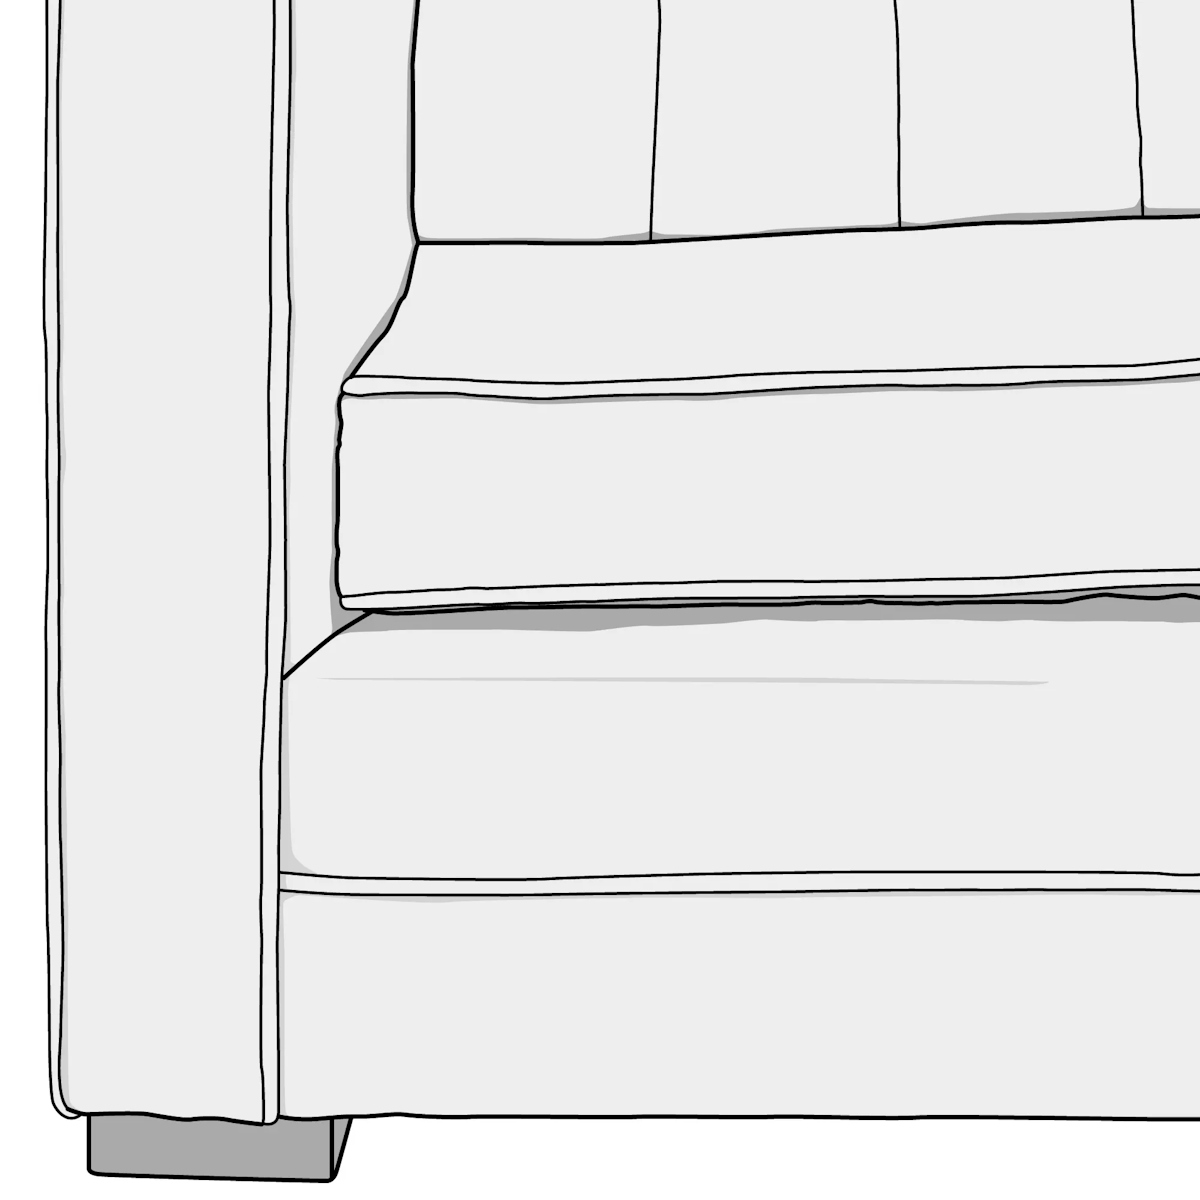 Illustration of box sofa cushion style